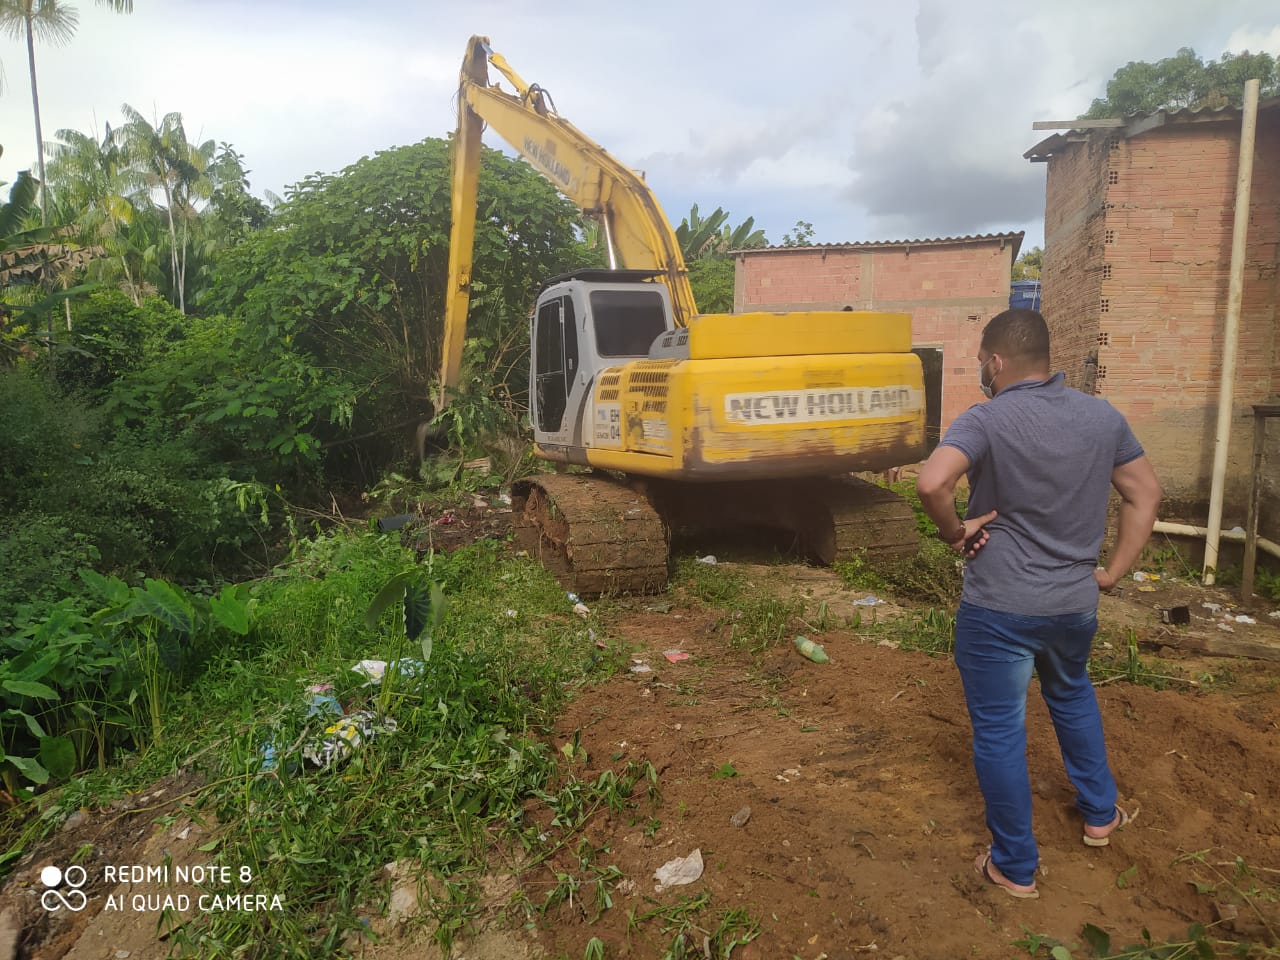 SEMOB realiza limpeza de Canal no bairro Nacional após solicitação do vereador Edevaldo Neves - News Rondônia